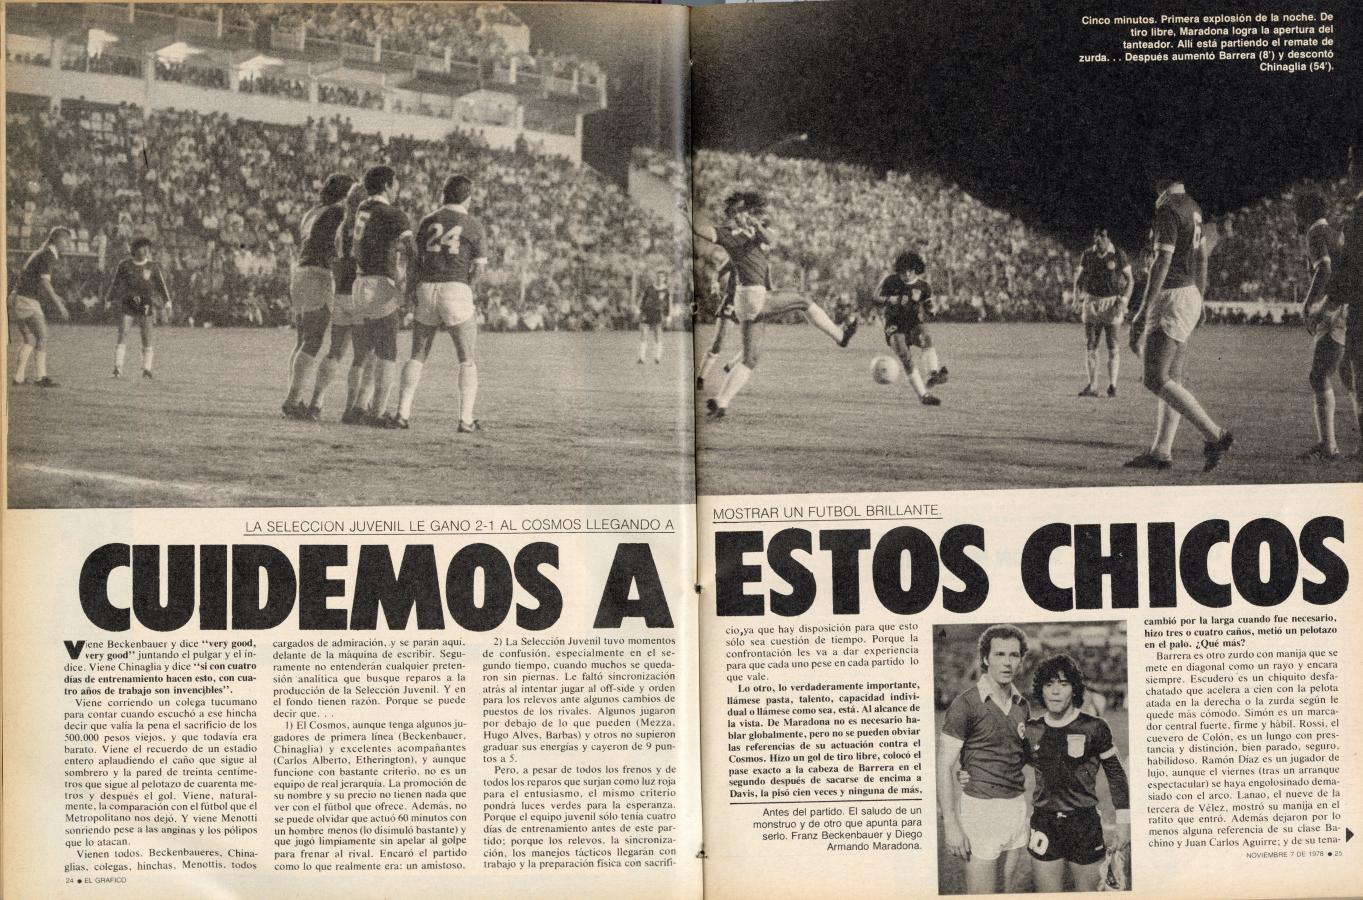 Imagen Nota de El Gráfico del 7 de noviembre de 1978. Se distinguen abajo a la derecha a Beckenbauer y a Diego Maradona.